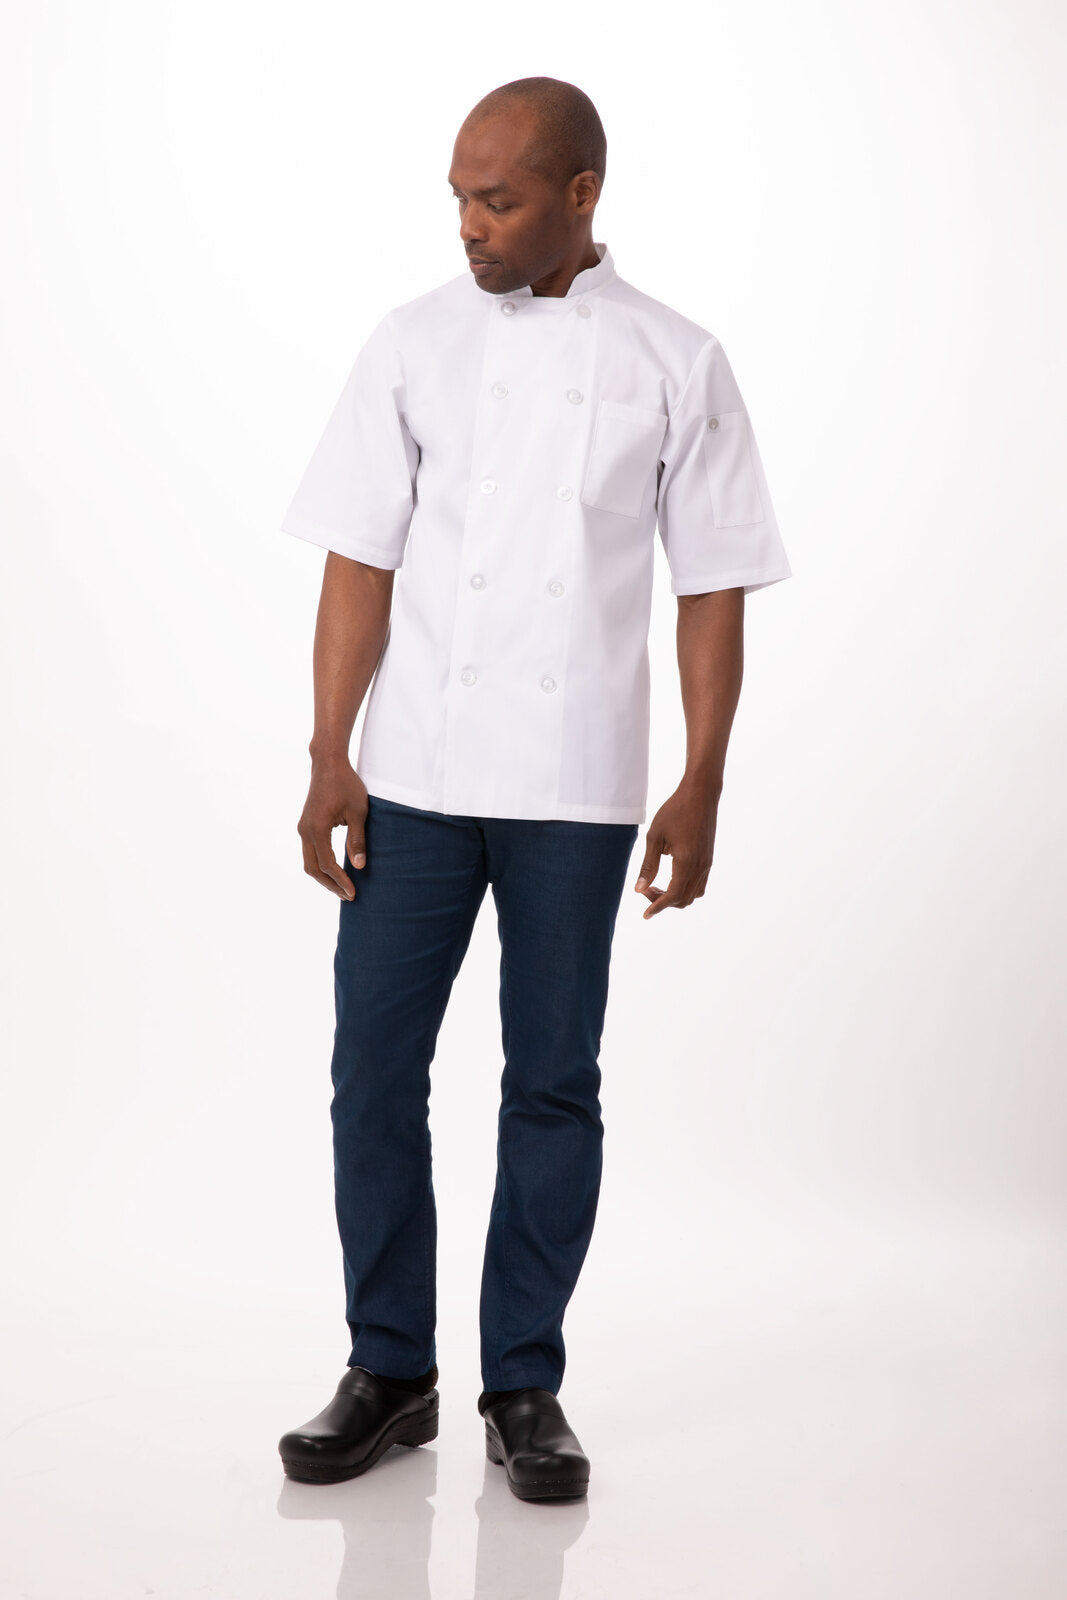 Chef Works - Volnay Chef Jacket